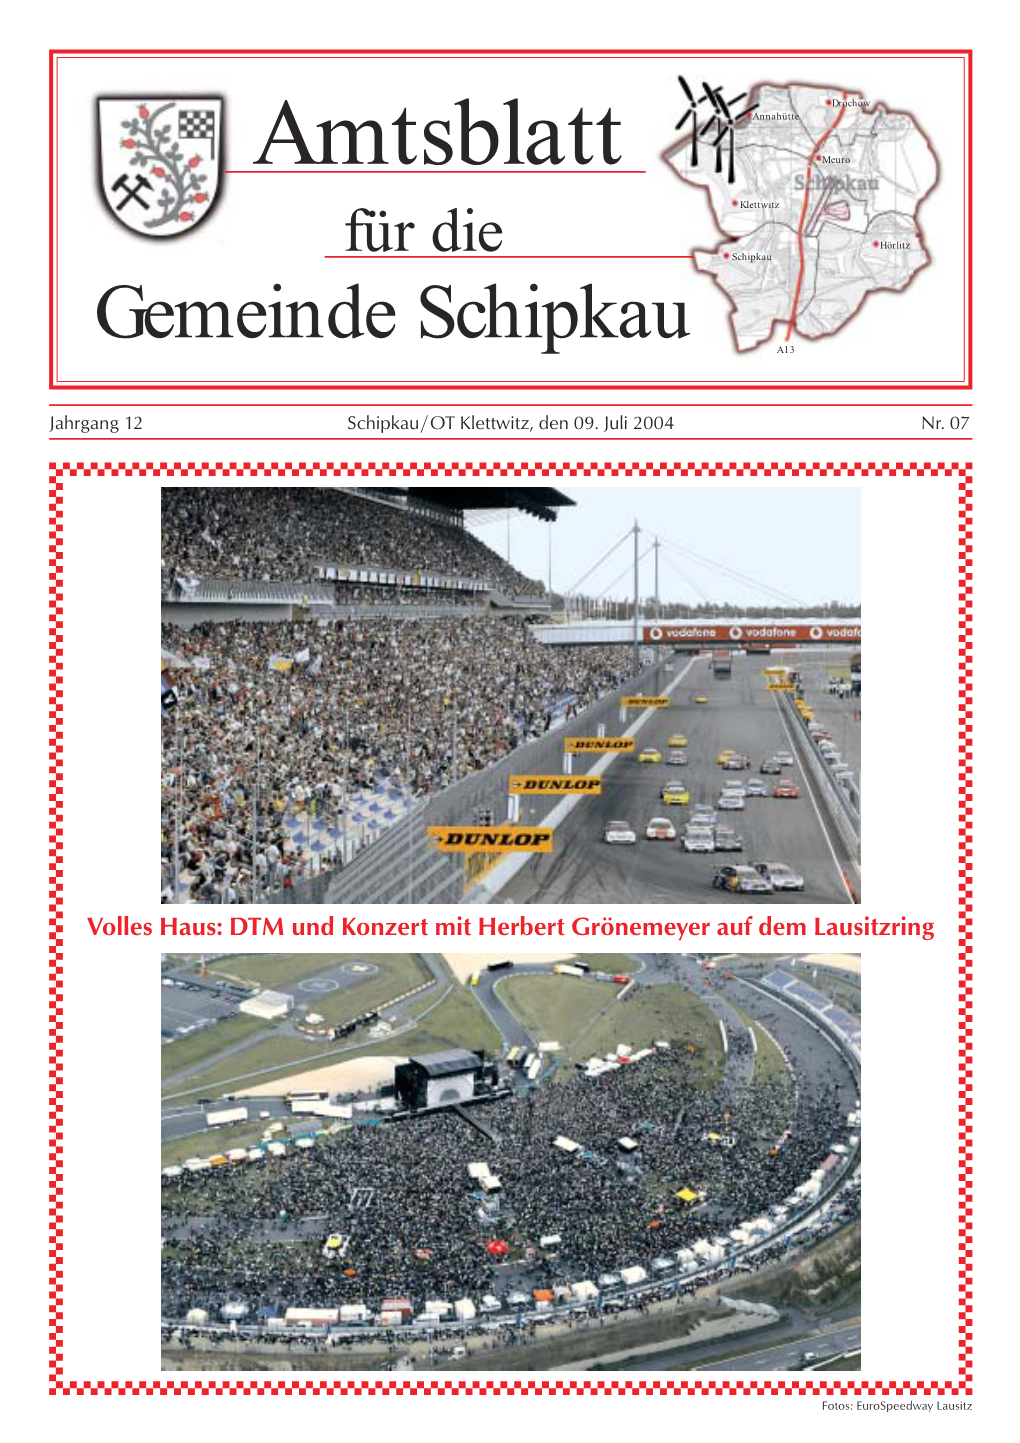 Amtsblatt Für Die Gemeinde Schipkau 07/04 1